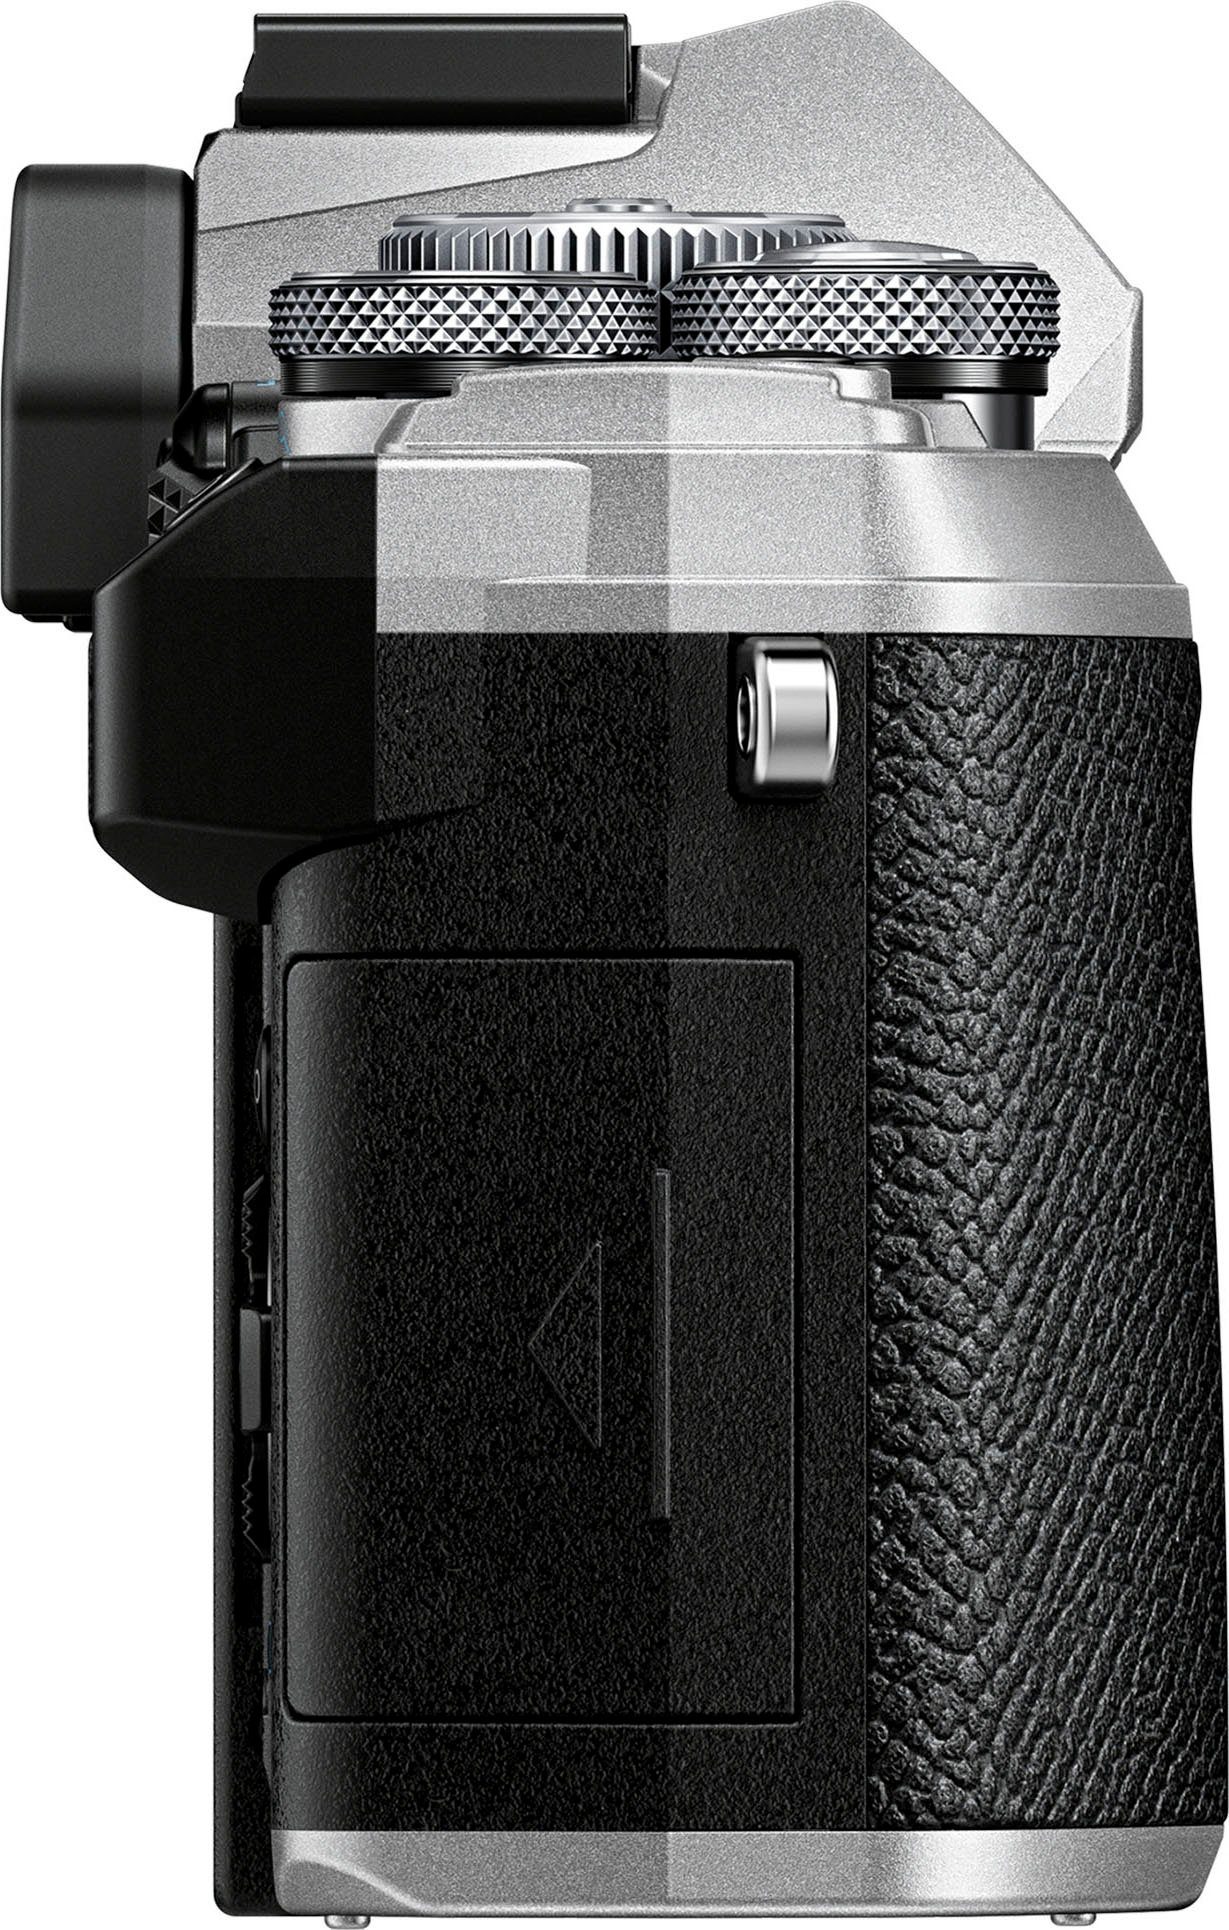 Body OM-5 Olympus WLAN Systemkamera-Body (20,4 (Wi-Fi) MP, Bluetooth,